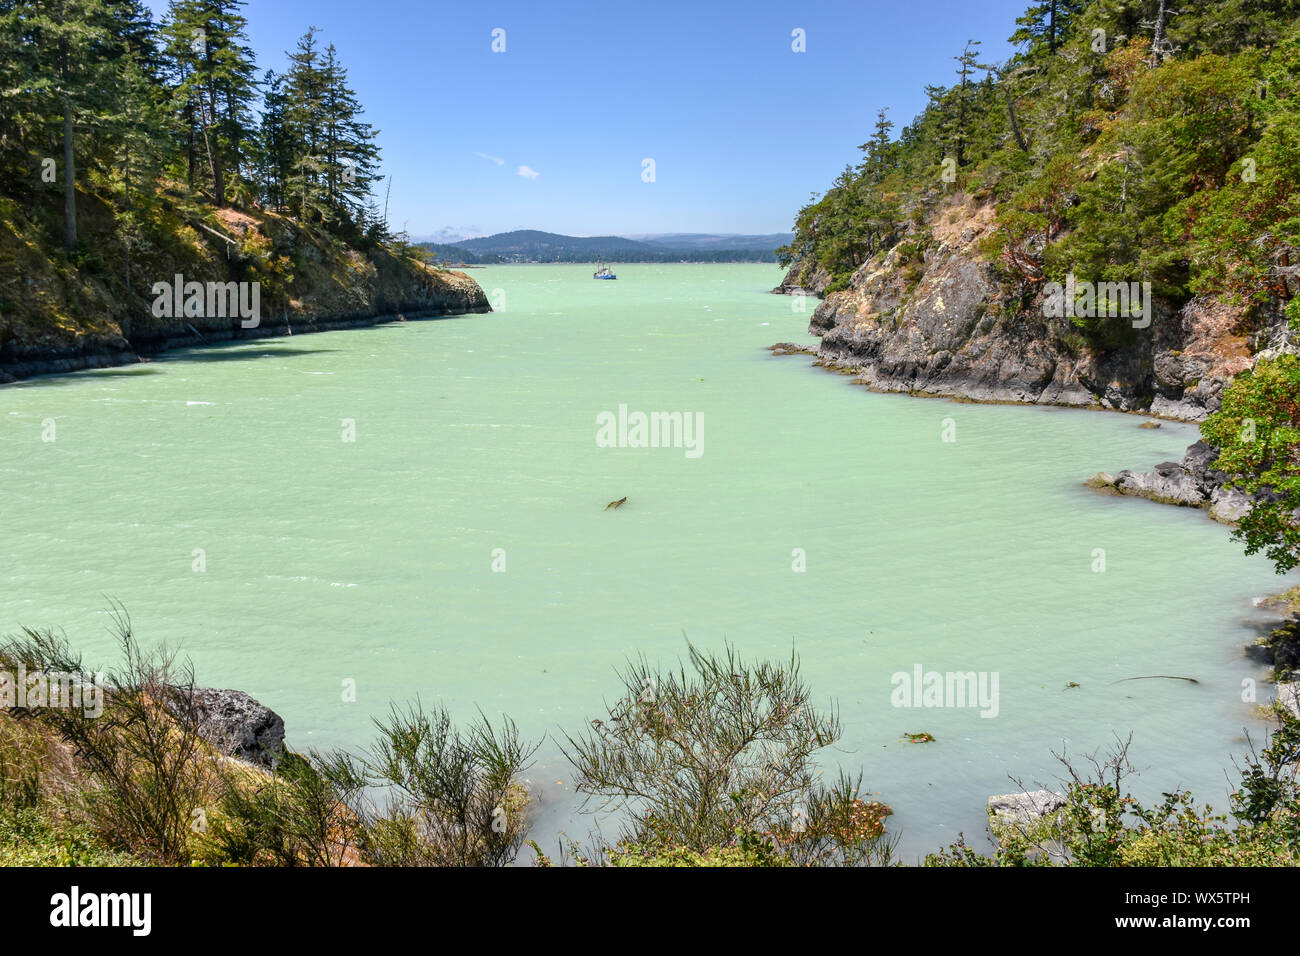 En 2016, une floraison d'algues a frappé le bassin Sooke et la côte environnante de l'île de Vancouver, projetant une teinte tropicale bleu-vert dans l'eau. Banque D'Images